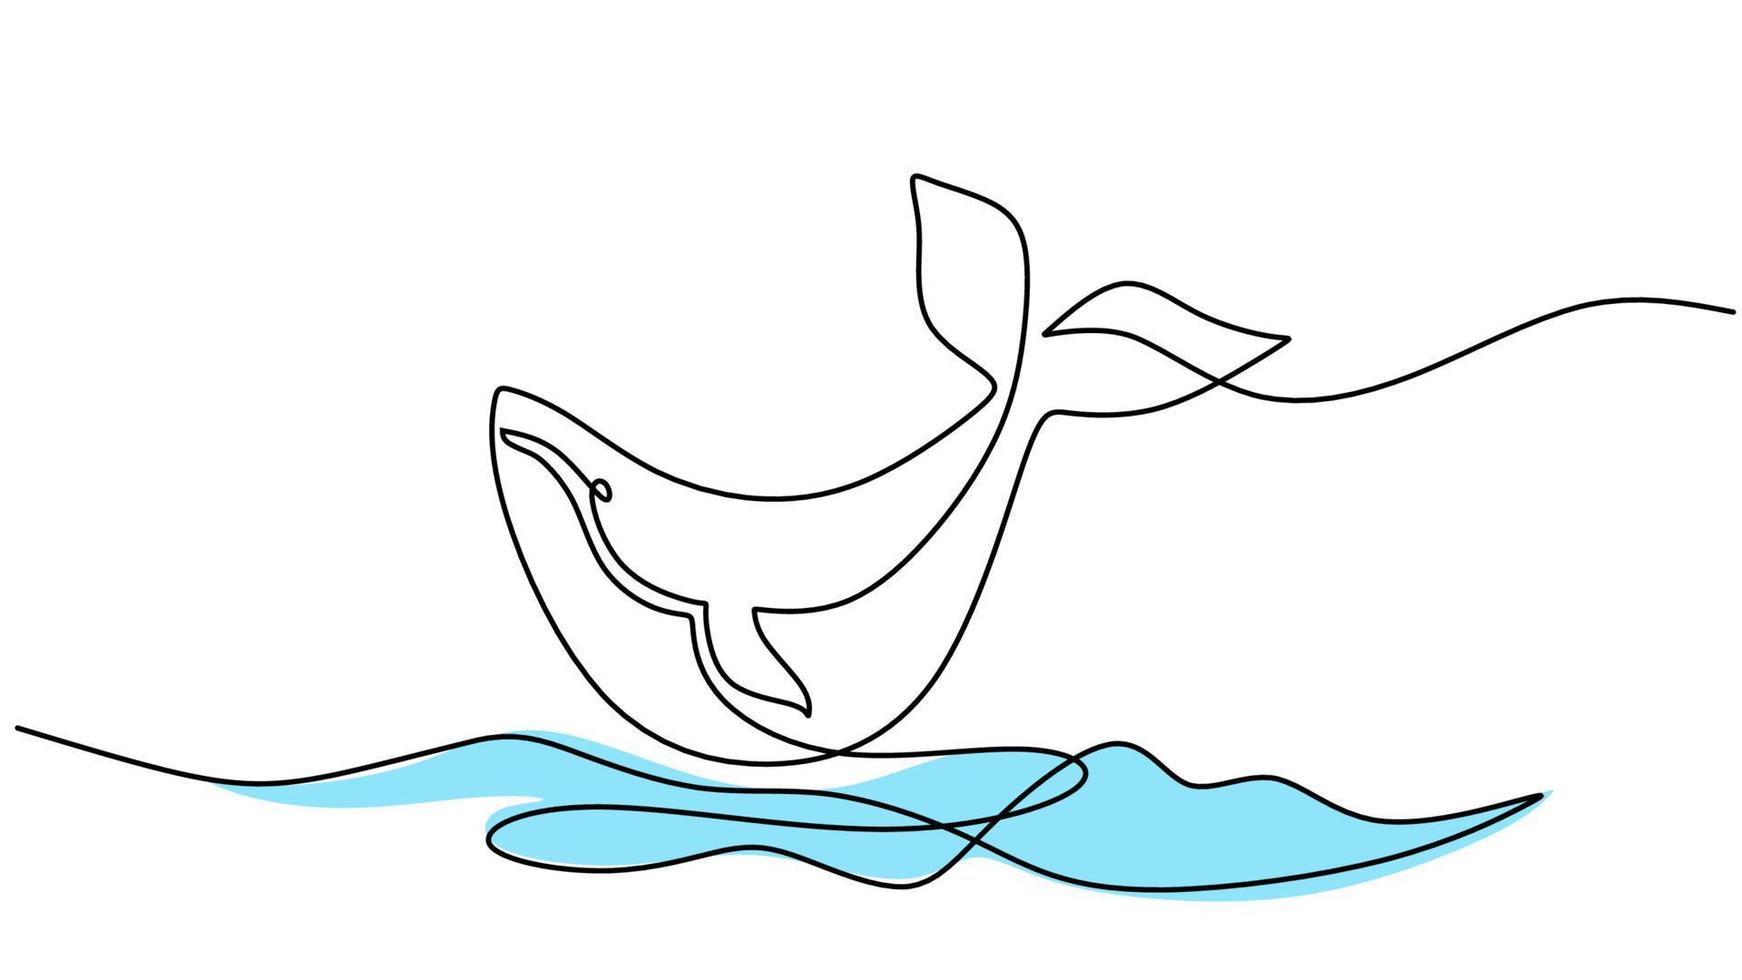 uno línea dibujo de saltando ballena aislado en blanco antecedentes vector